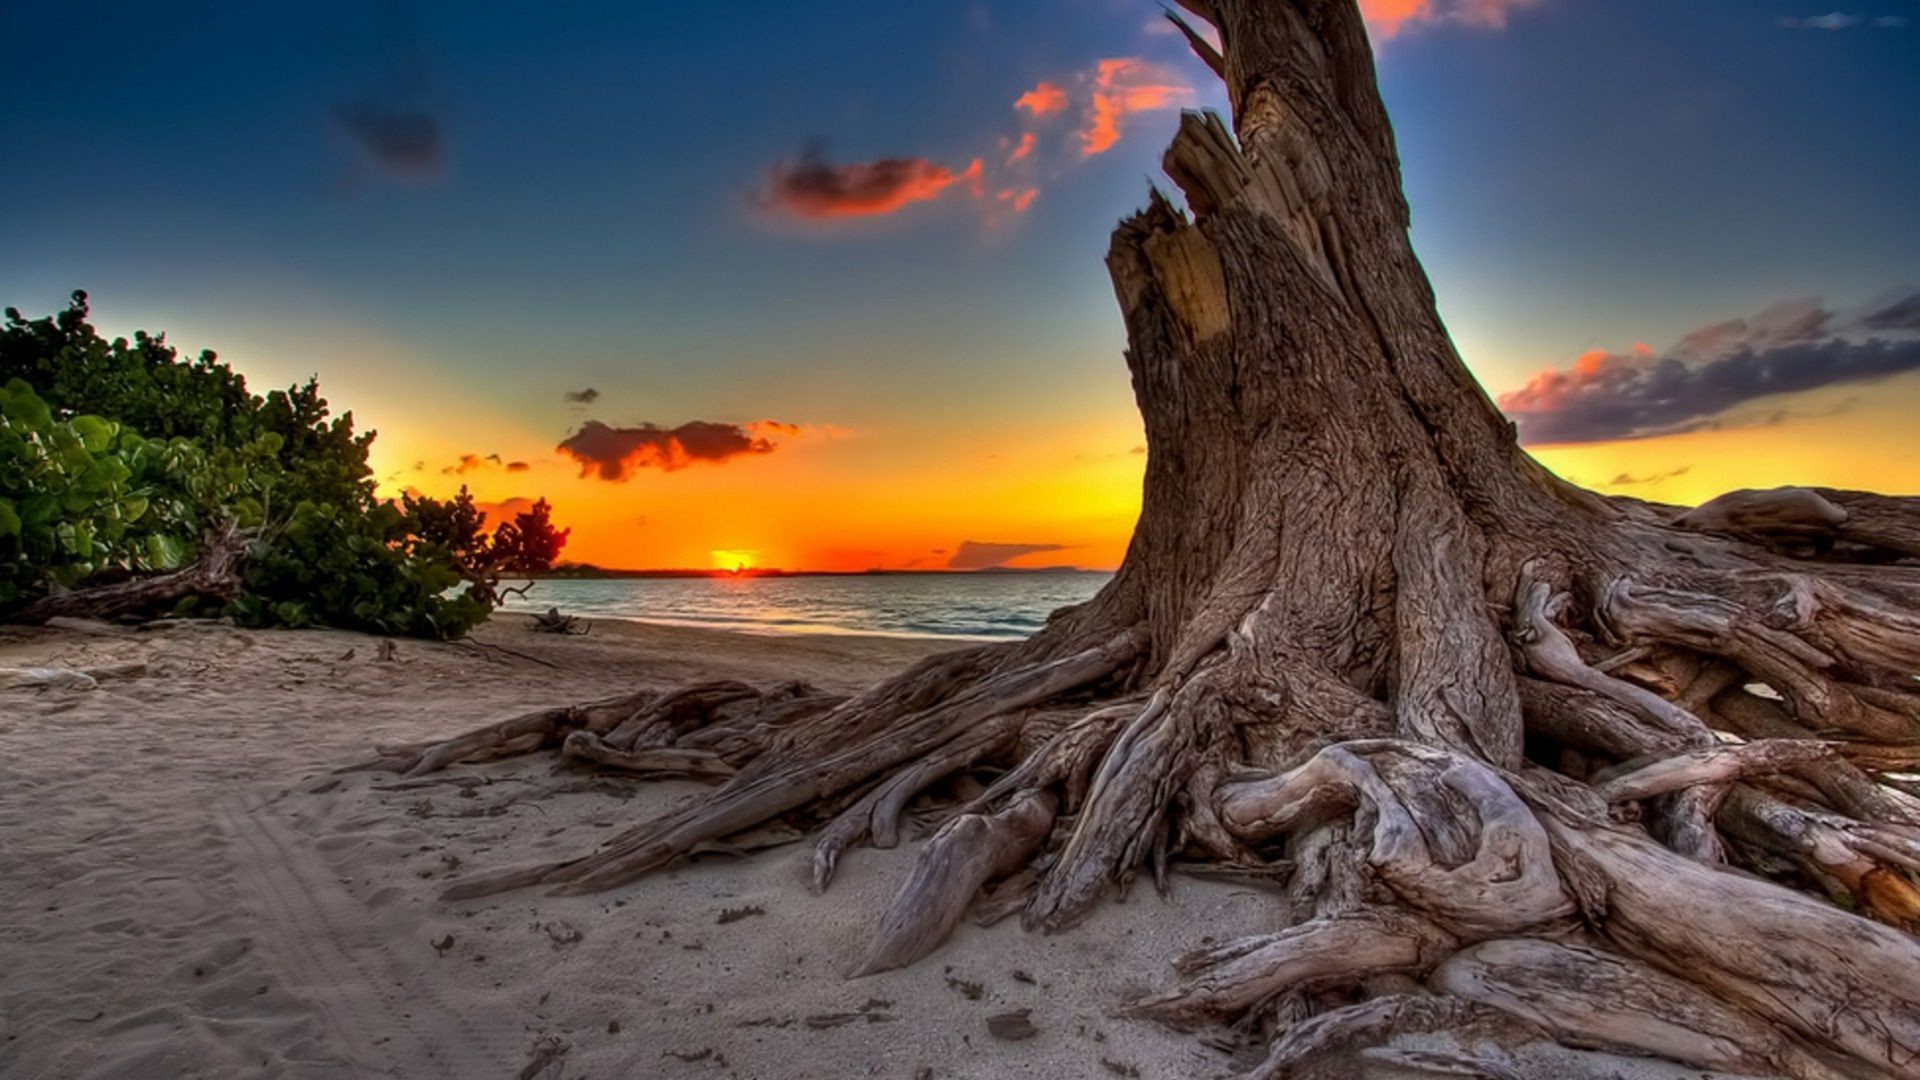 Beach Earth Ocean Sea Stump Sunset Tree 1920x1080